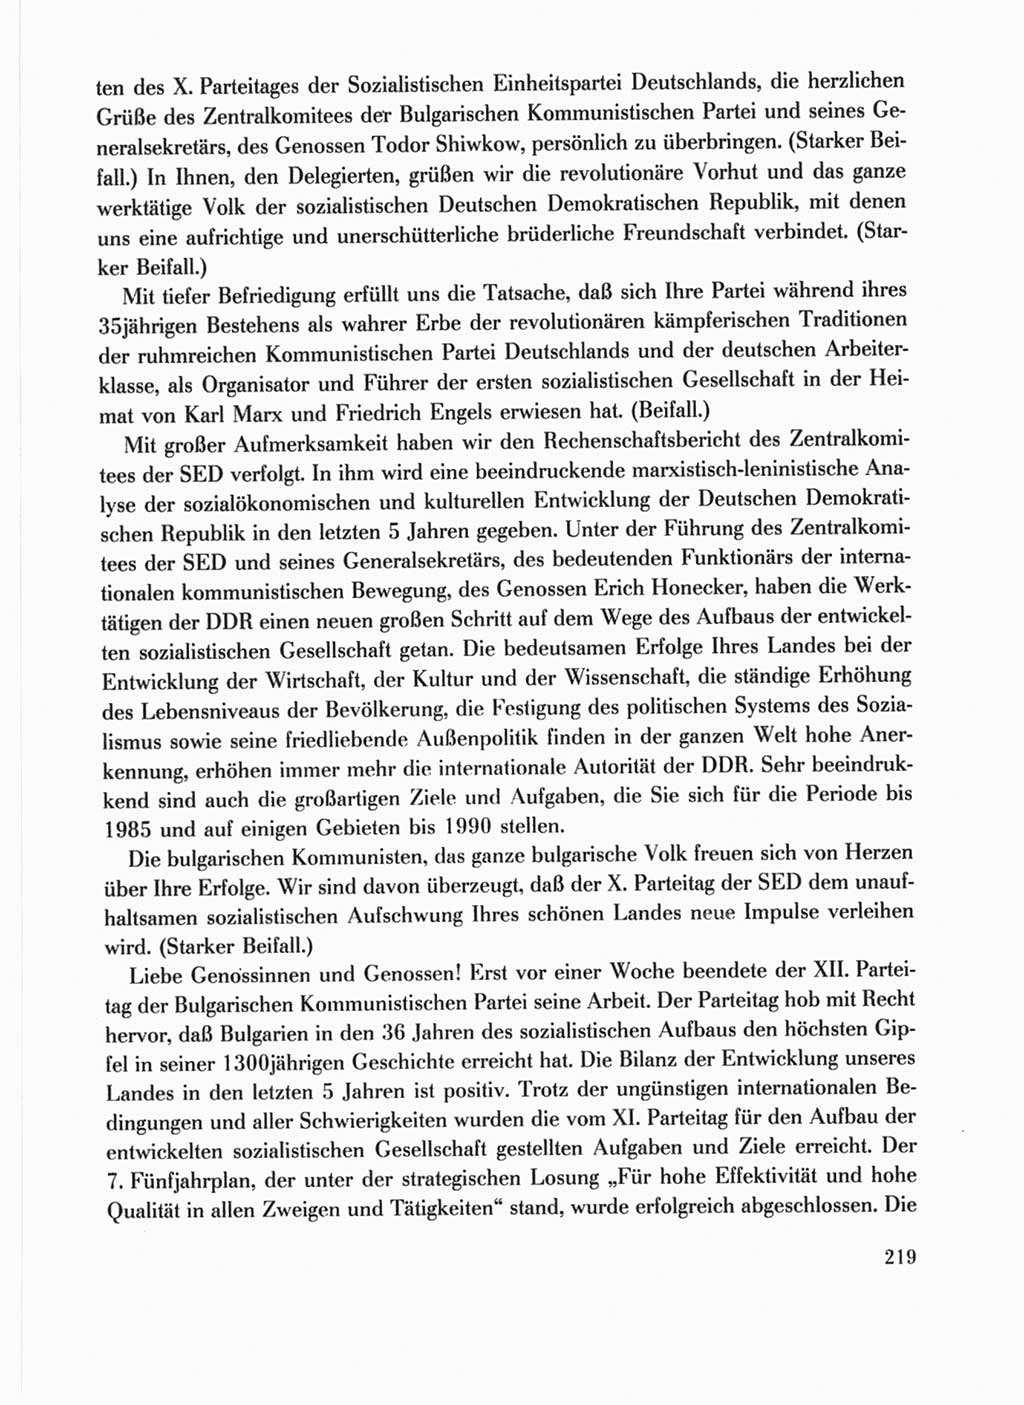 Protokoll der Verhandlungen des Ⅹ. Parteitages der Sozialistischen Einheitspartei Deutschlands (SED) [Deutsche Demokratische Republik (DDR)] 1981, Band 1, Seite 219 (Prot. Verh. Ⅹ. PT SED DDR 1981, Bd. 1, S. 219)